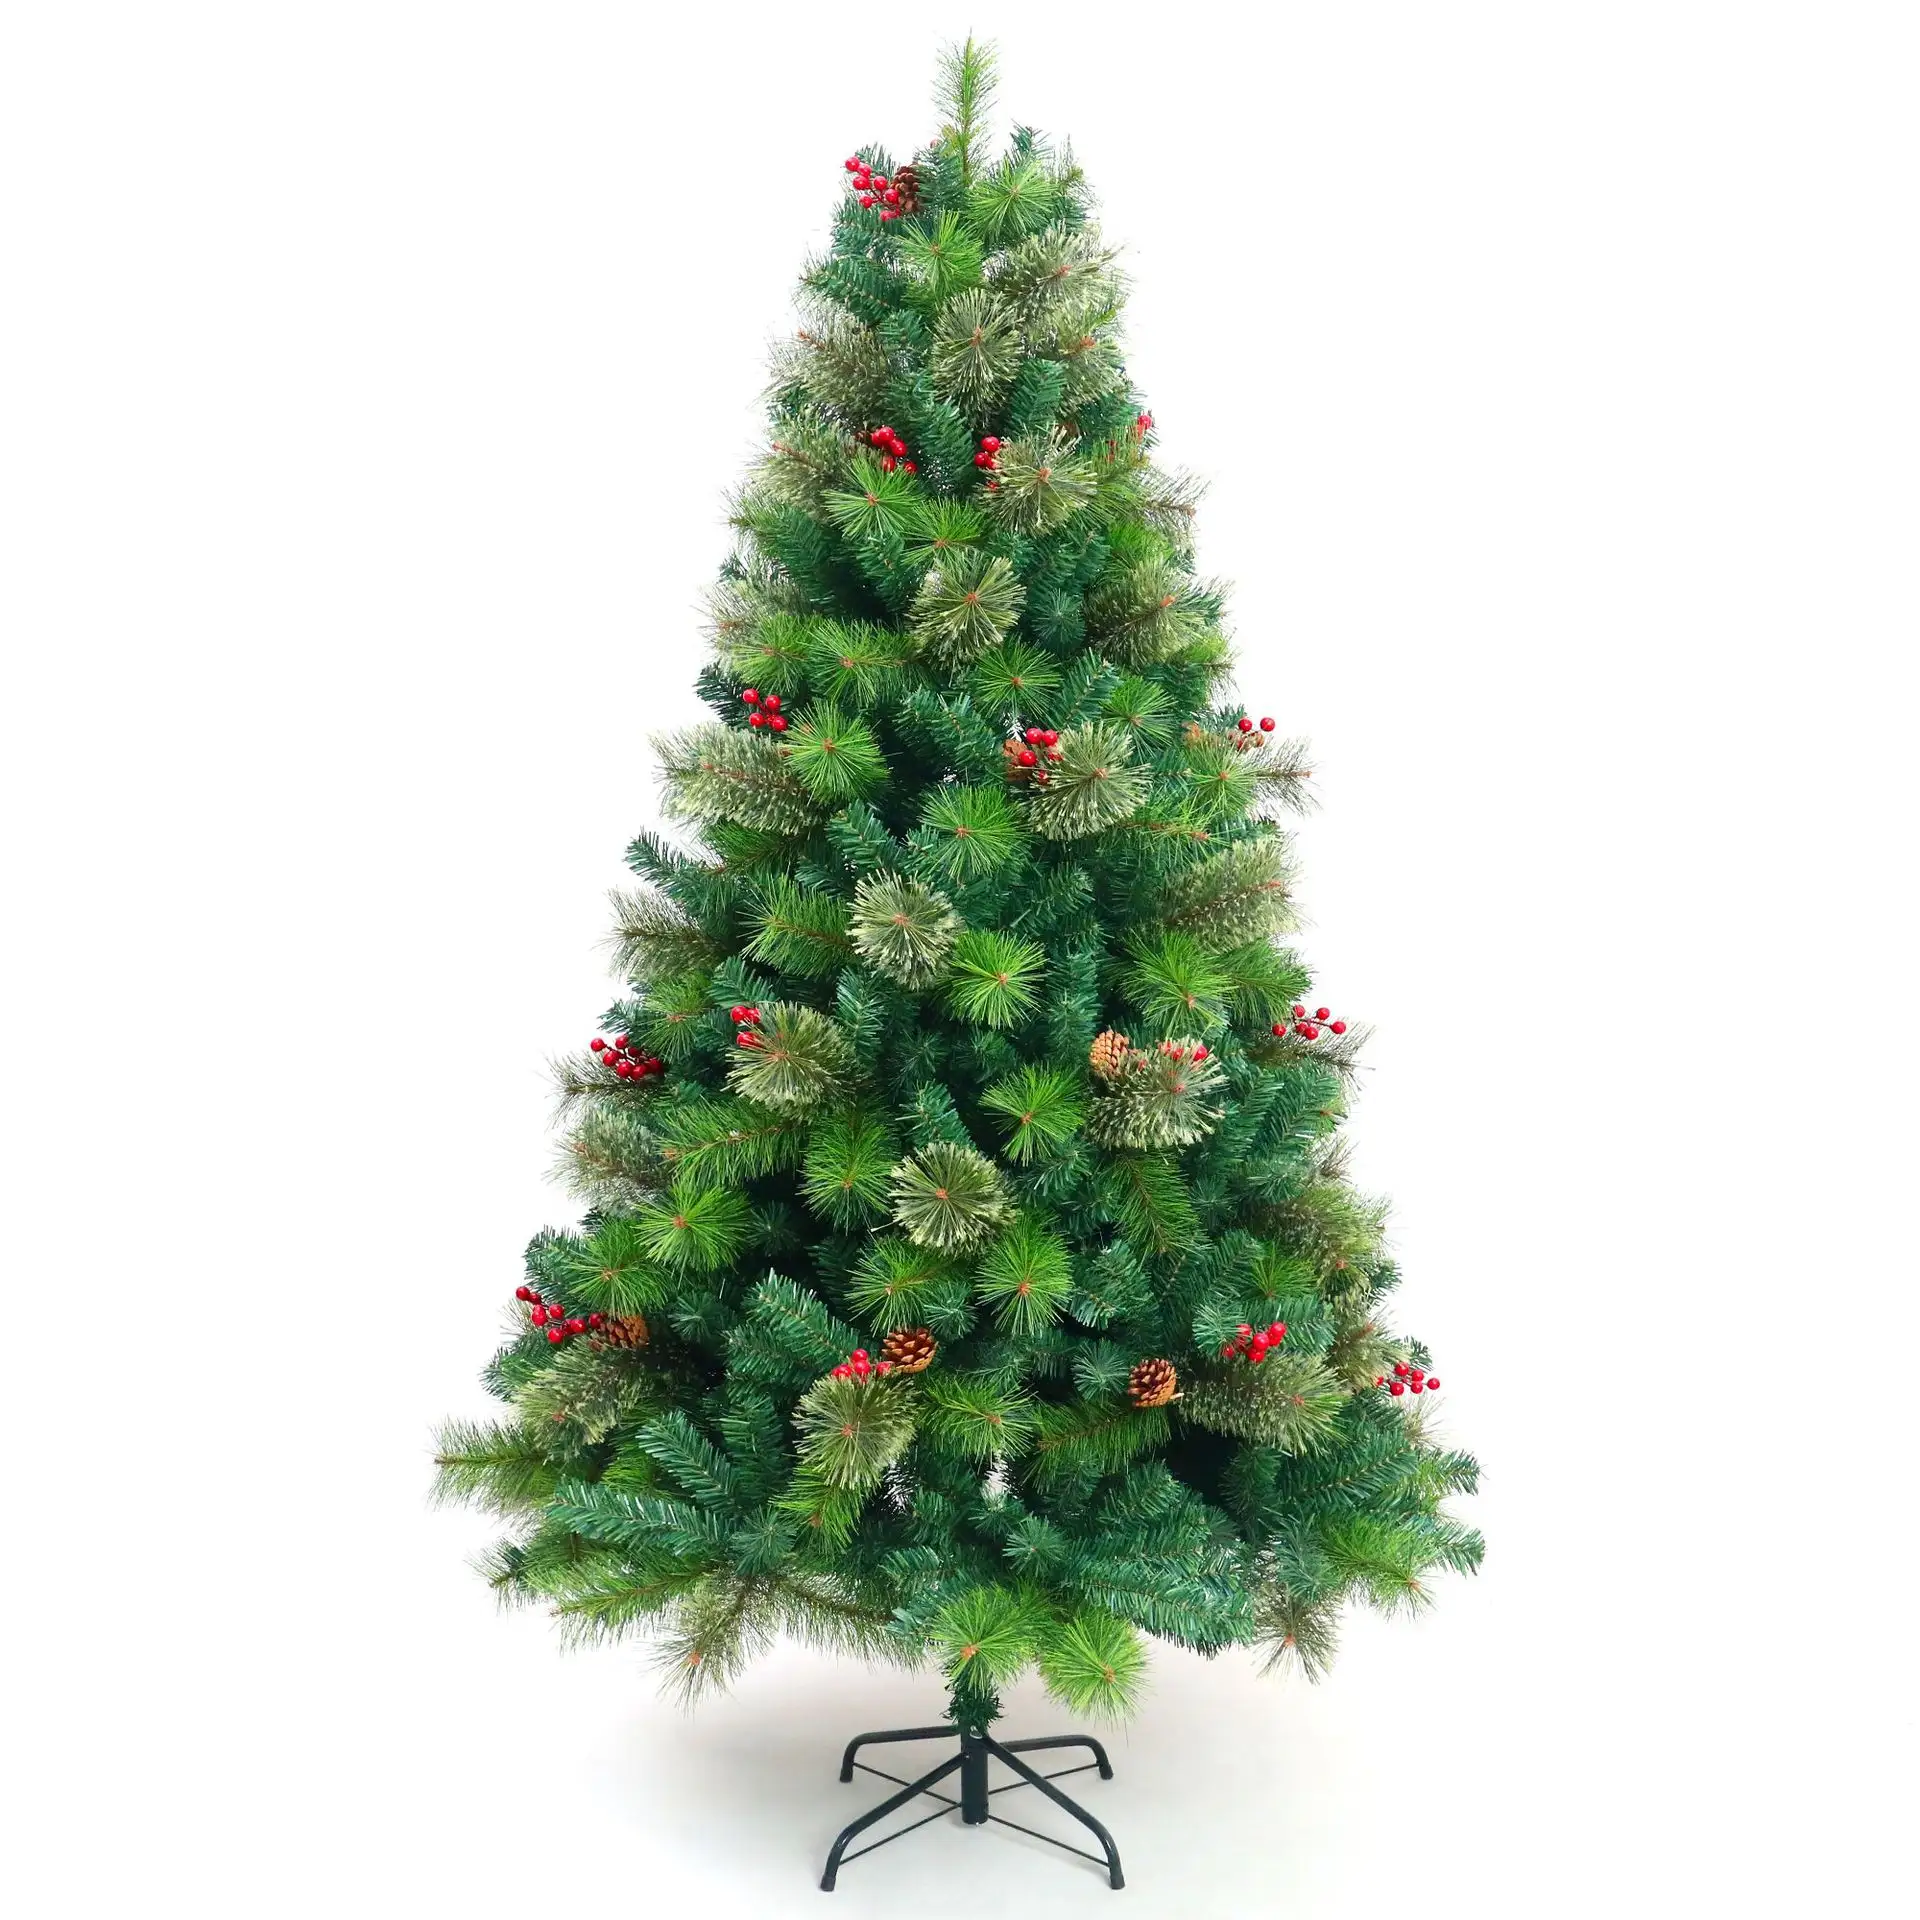 شجرة كريسماس عصرية, شجرة كريسماس عصرية بمفصلي rbol arbol de navidad denso قابلة للطي ومتوفرة للبيع بالجملة من المصنع مباشرة ومتوفرة باللون الأخضر من مادة البولي فينيل كلوريد بطول 1.2 متر